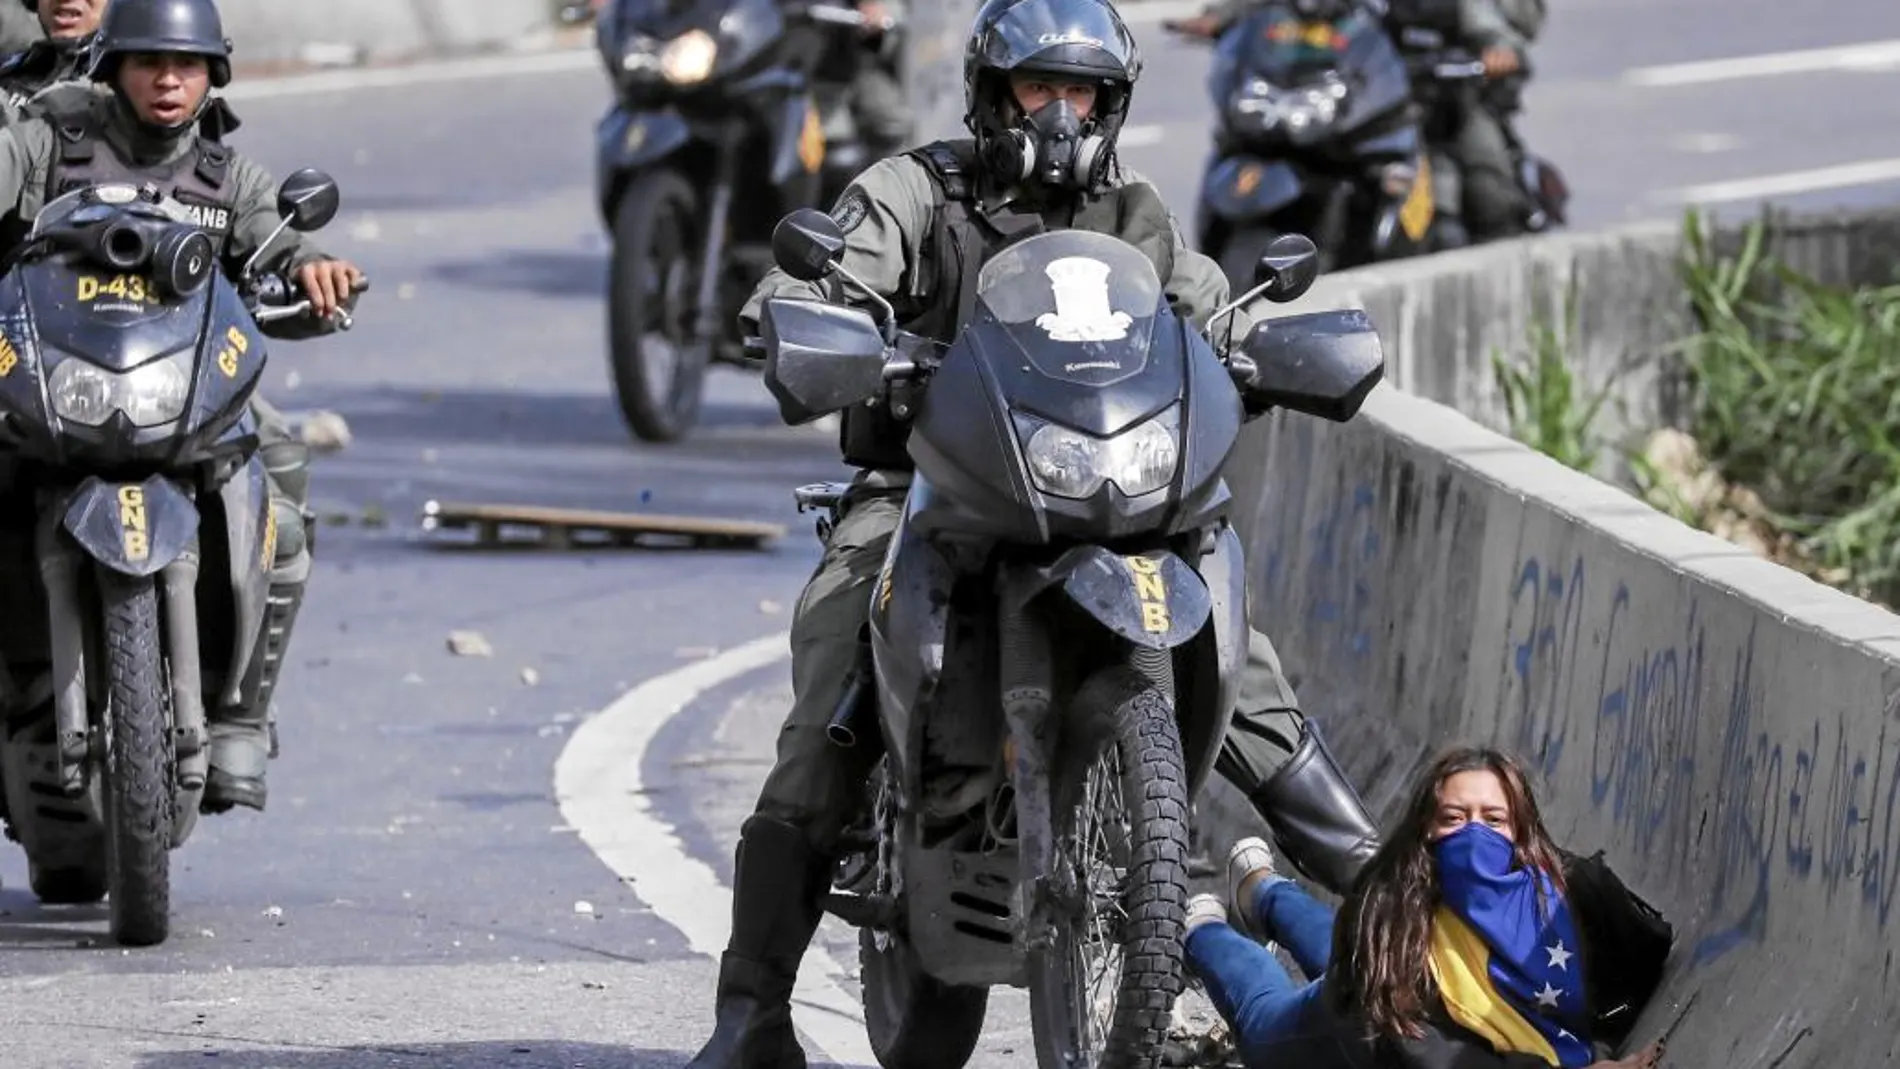 La guardia bolivariana es el brazo ejecutor de la política represiva de Maduro. Aquí un agente pisotea a una joven en Caracas